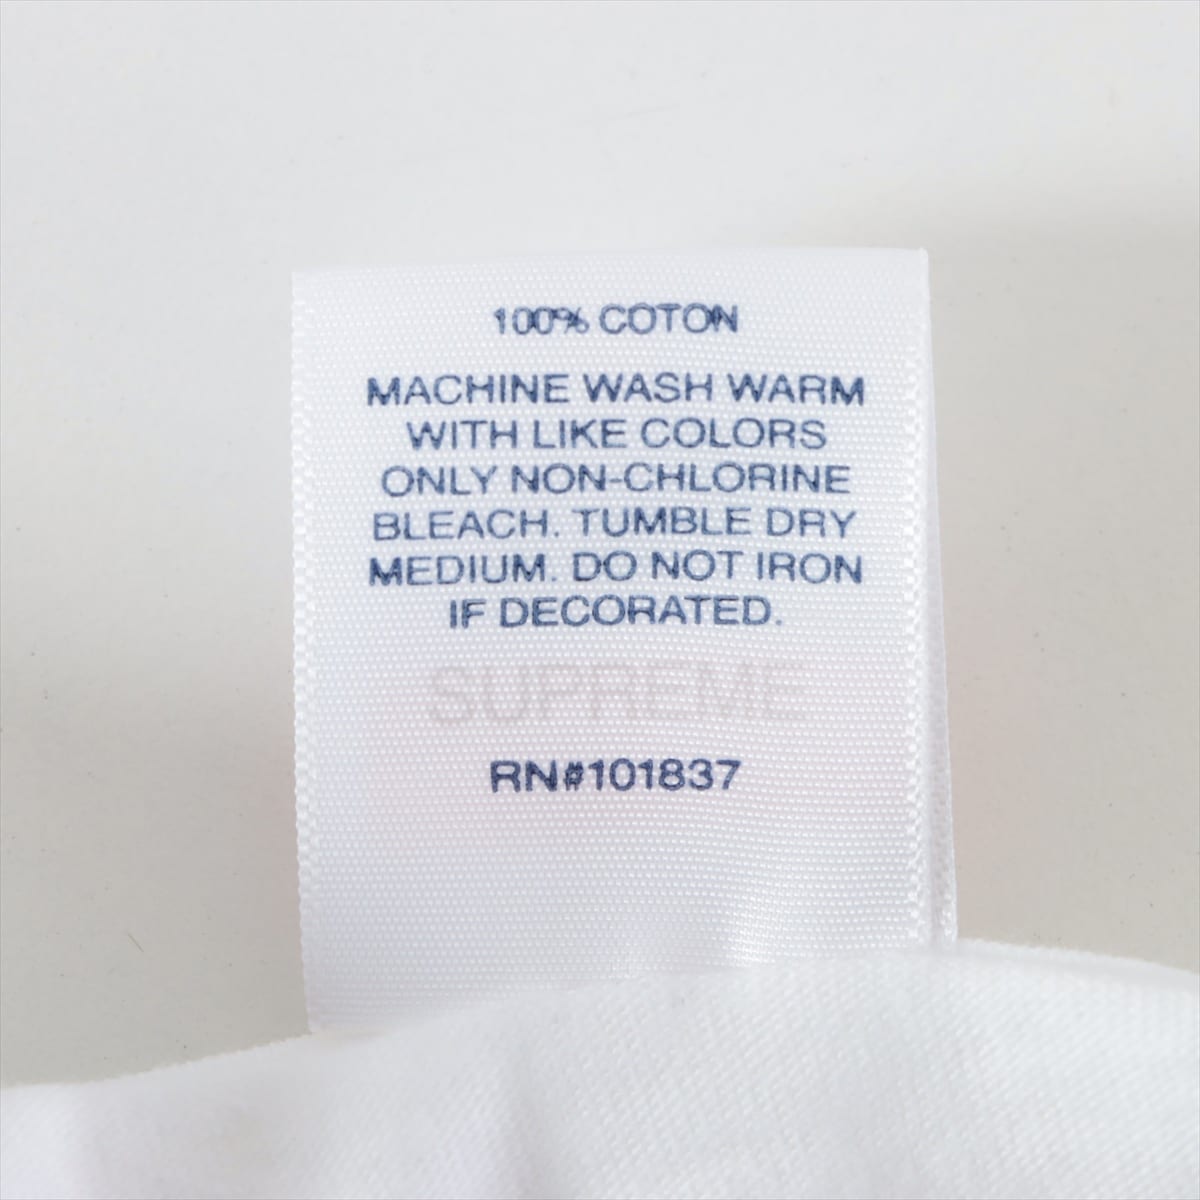 シュプリーム 22SS コットン Tシャツ XL メンズ ホワイト  RALPH STEADMAN BOX LOGO TEE